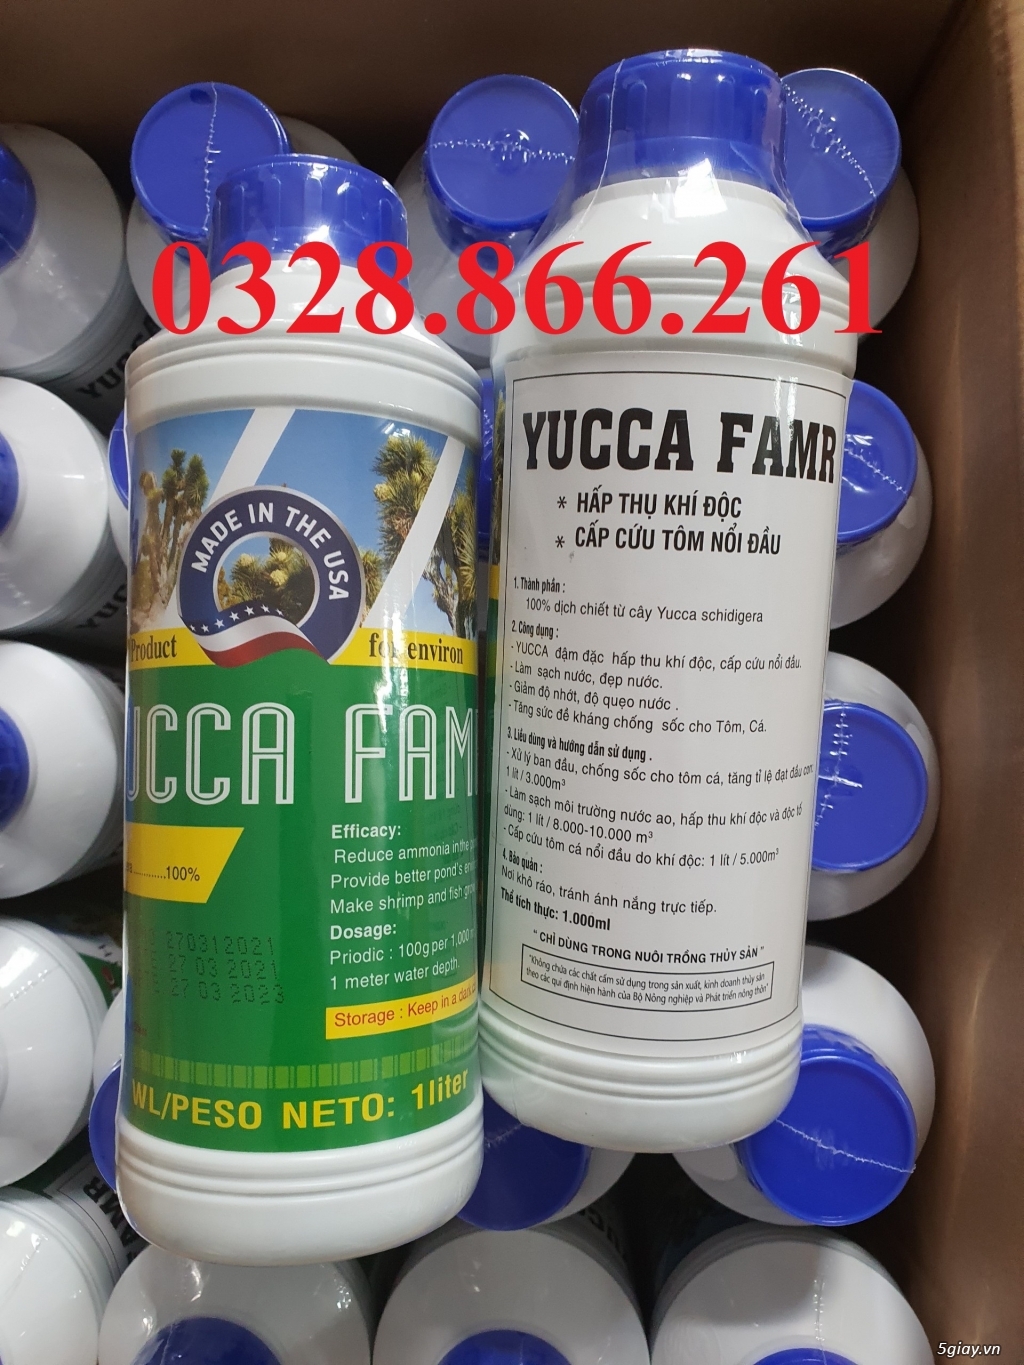 YUCCA FARM khử khí độc, xử lý môi trường - 4